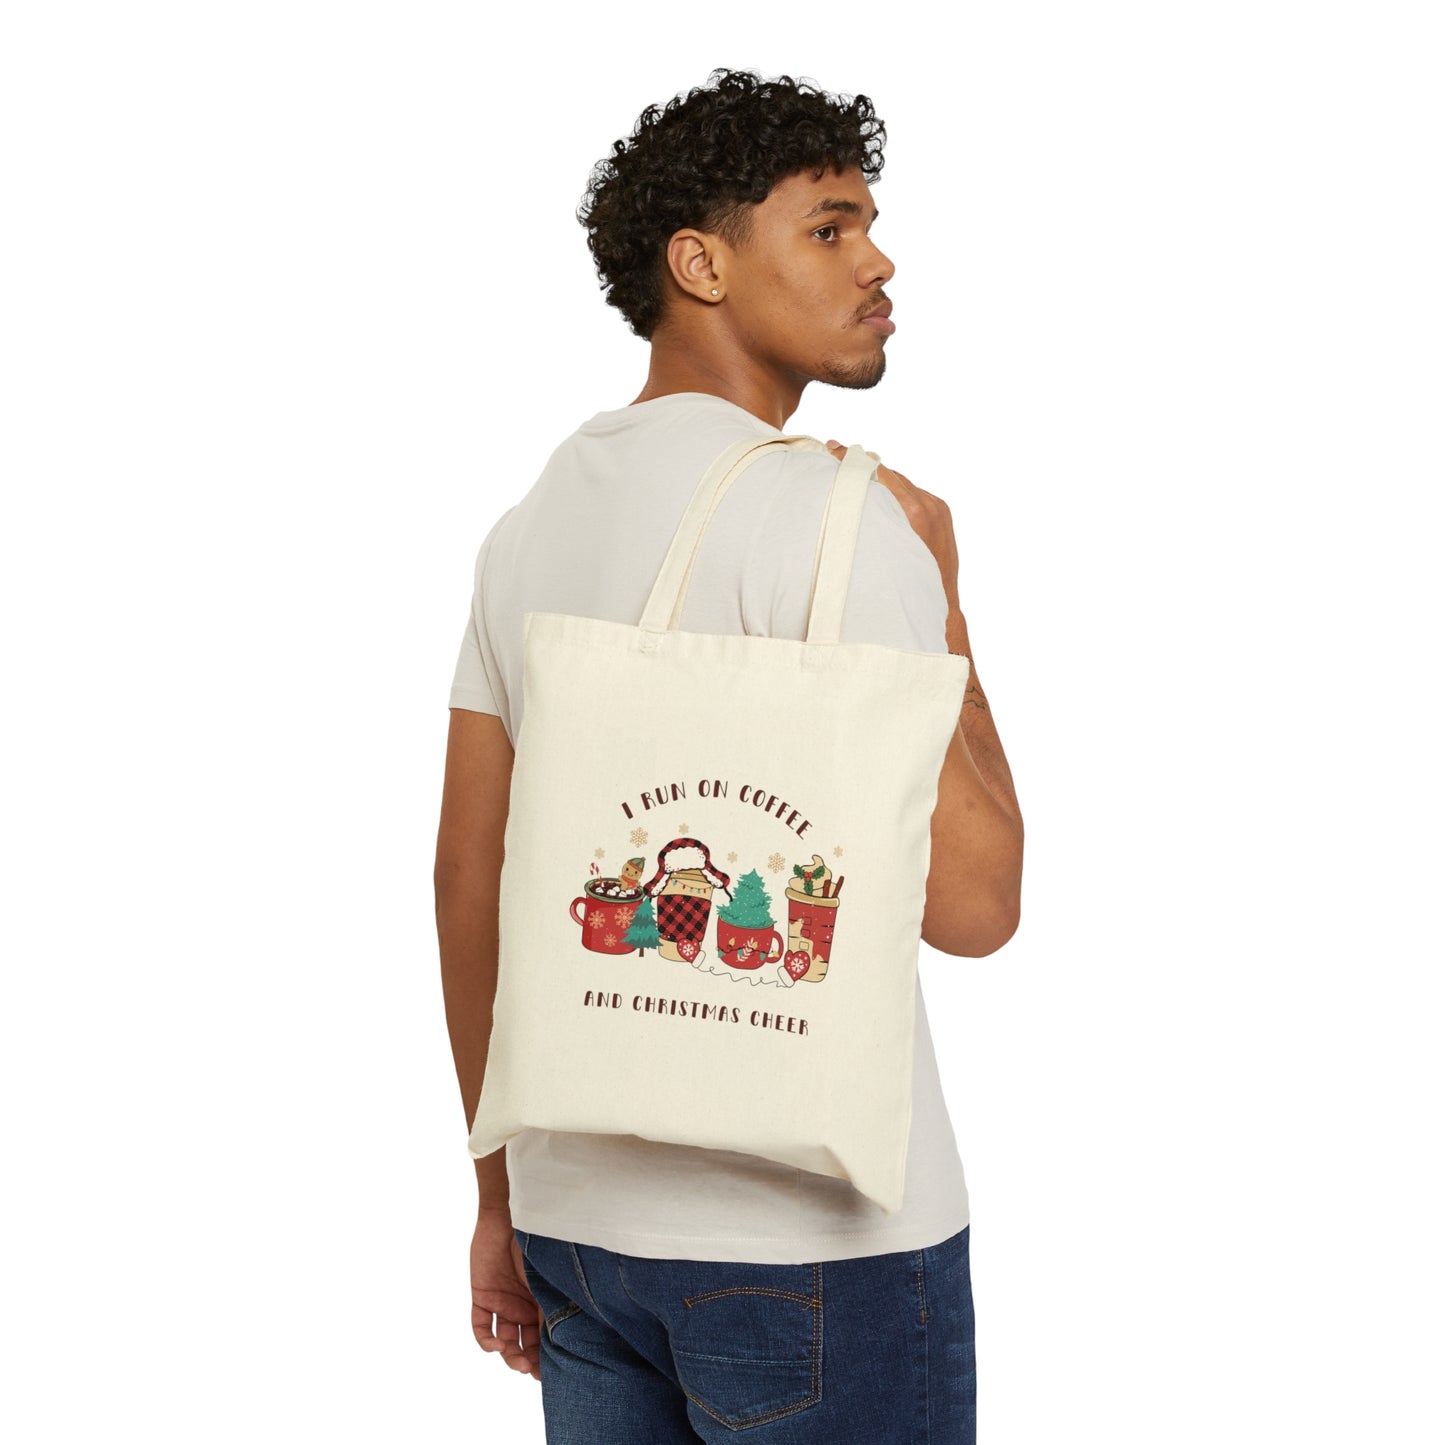 I Run on Coffee and Christmas Cheer - Christmas Tote Bag - Cotton Canvas Tote Bag